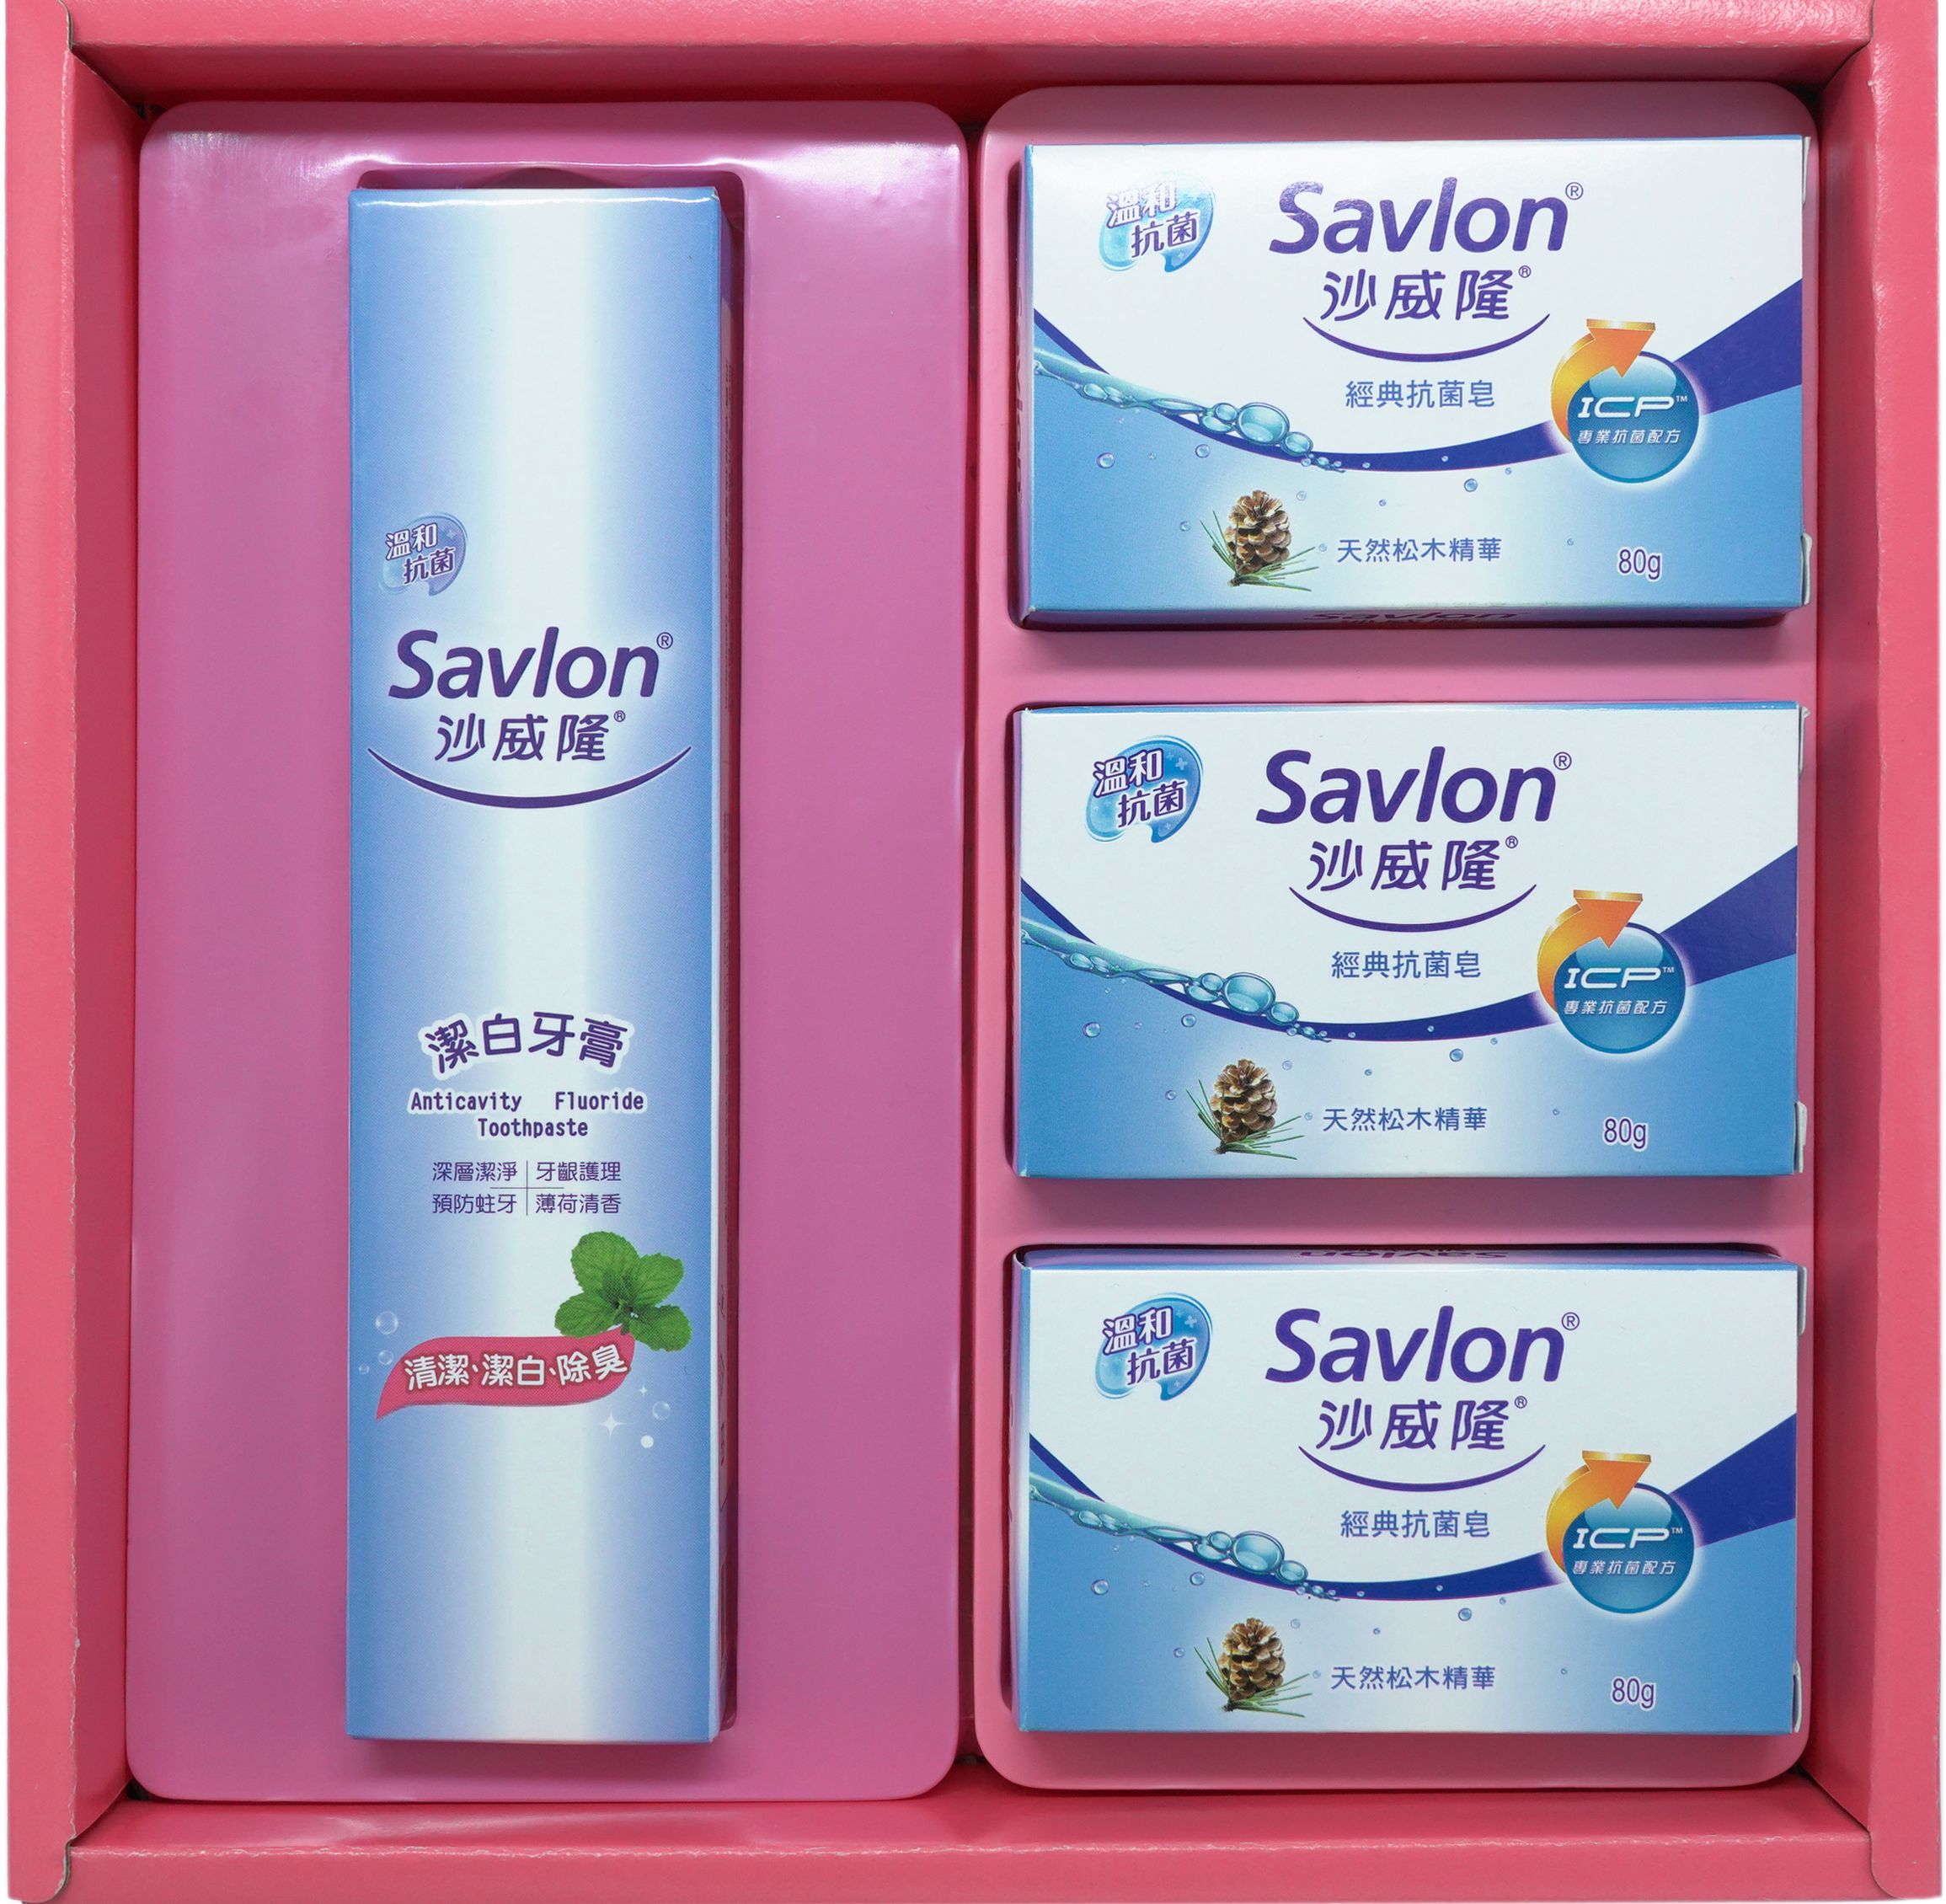 沙威隆-抗菌禮盒組(沙威隆牙膏120g+經典抗菌皂80g)